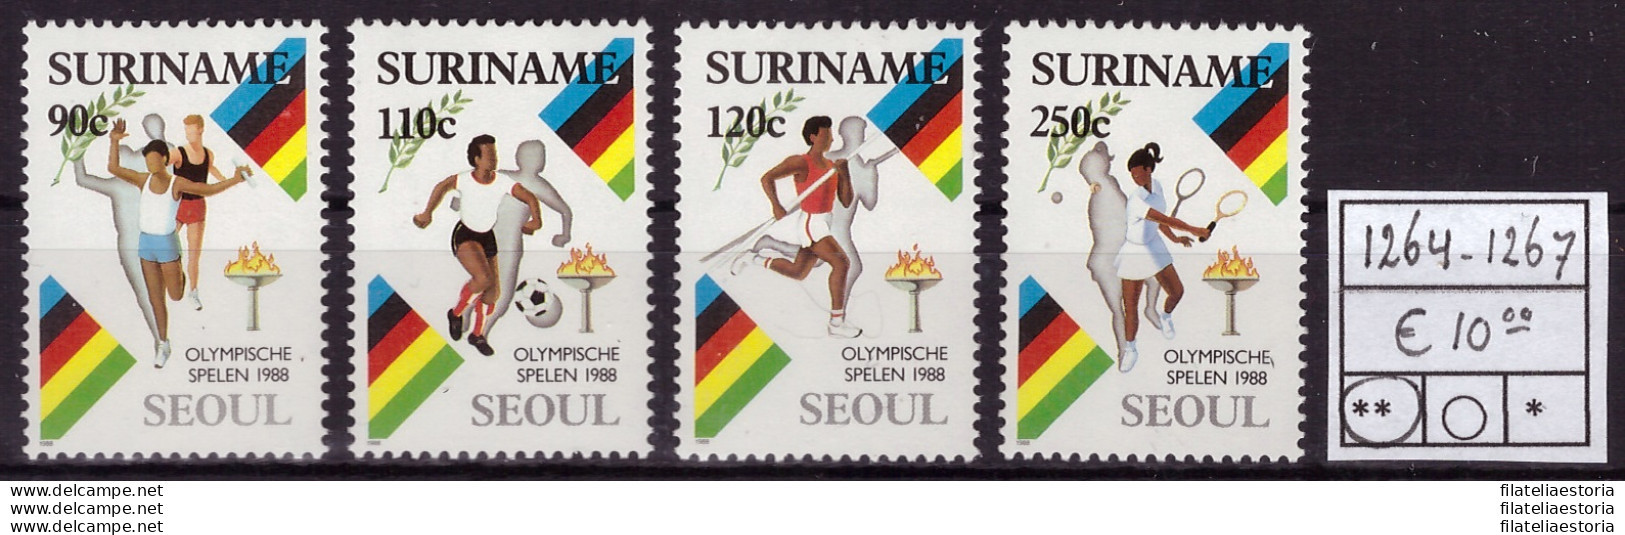 Suriname 1988 - MNH ** - Jeux Olympiques, Seoul - Michel Nr. 1264-1267 Série Complète (08-100) - Suriname